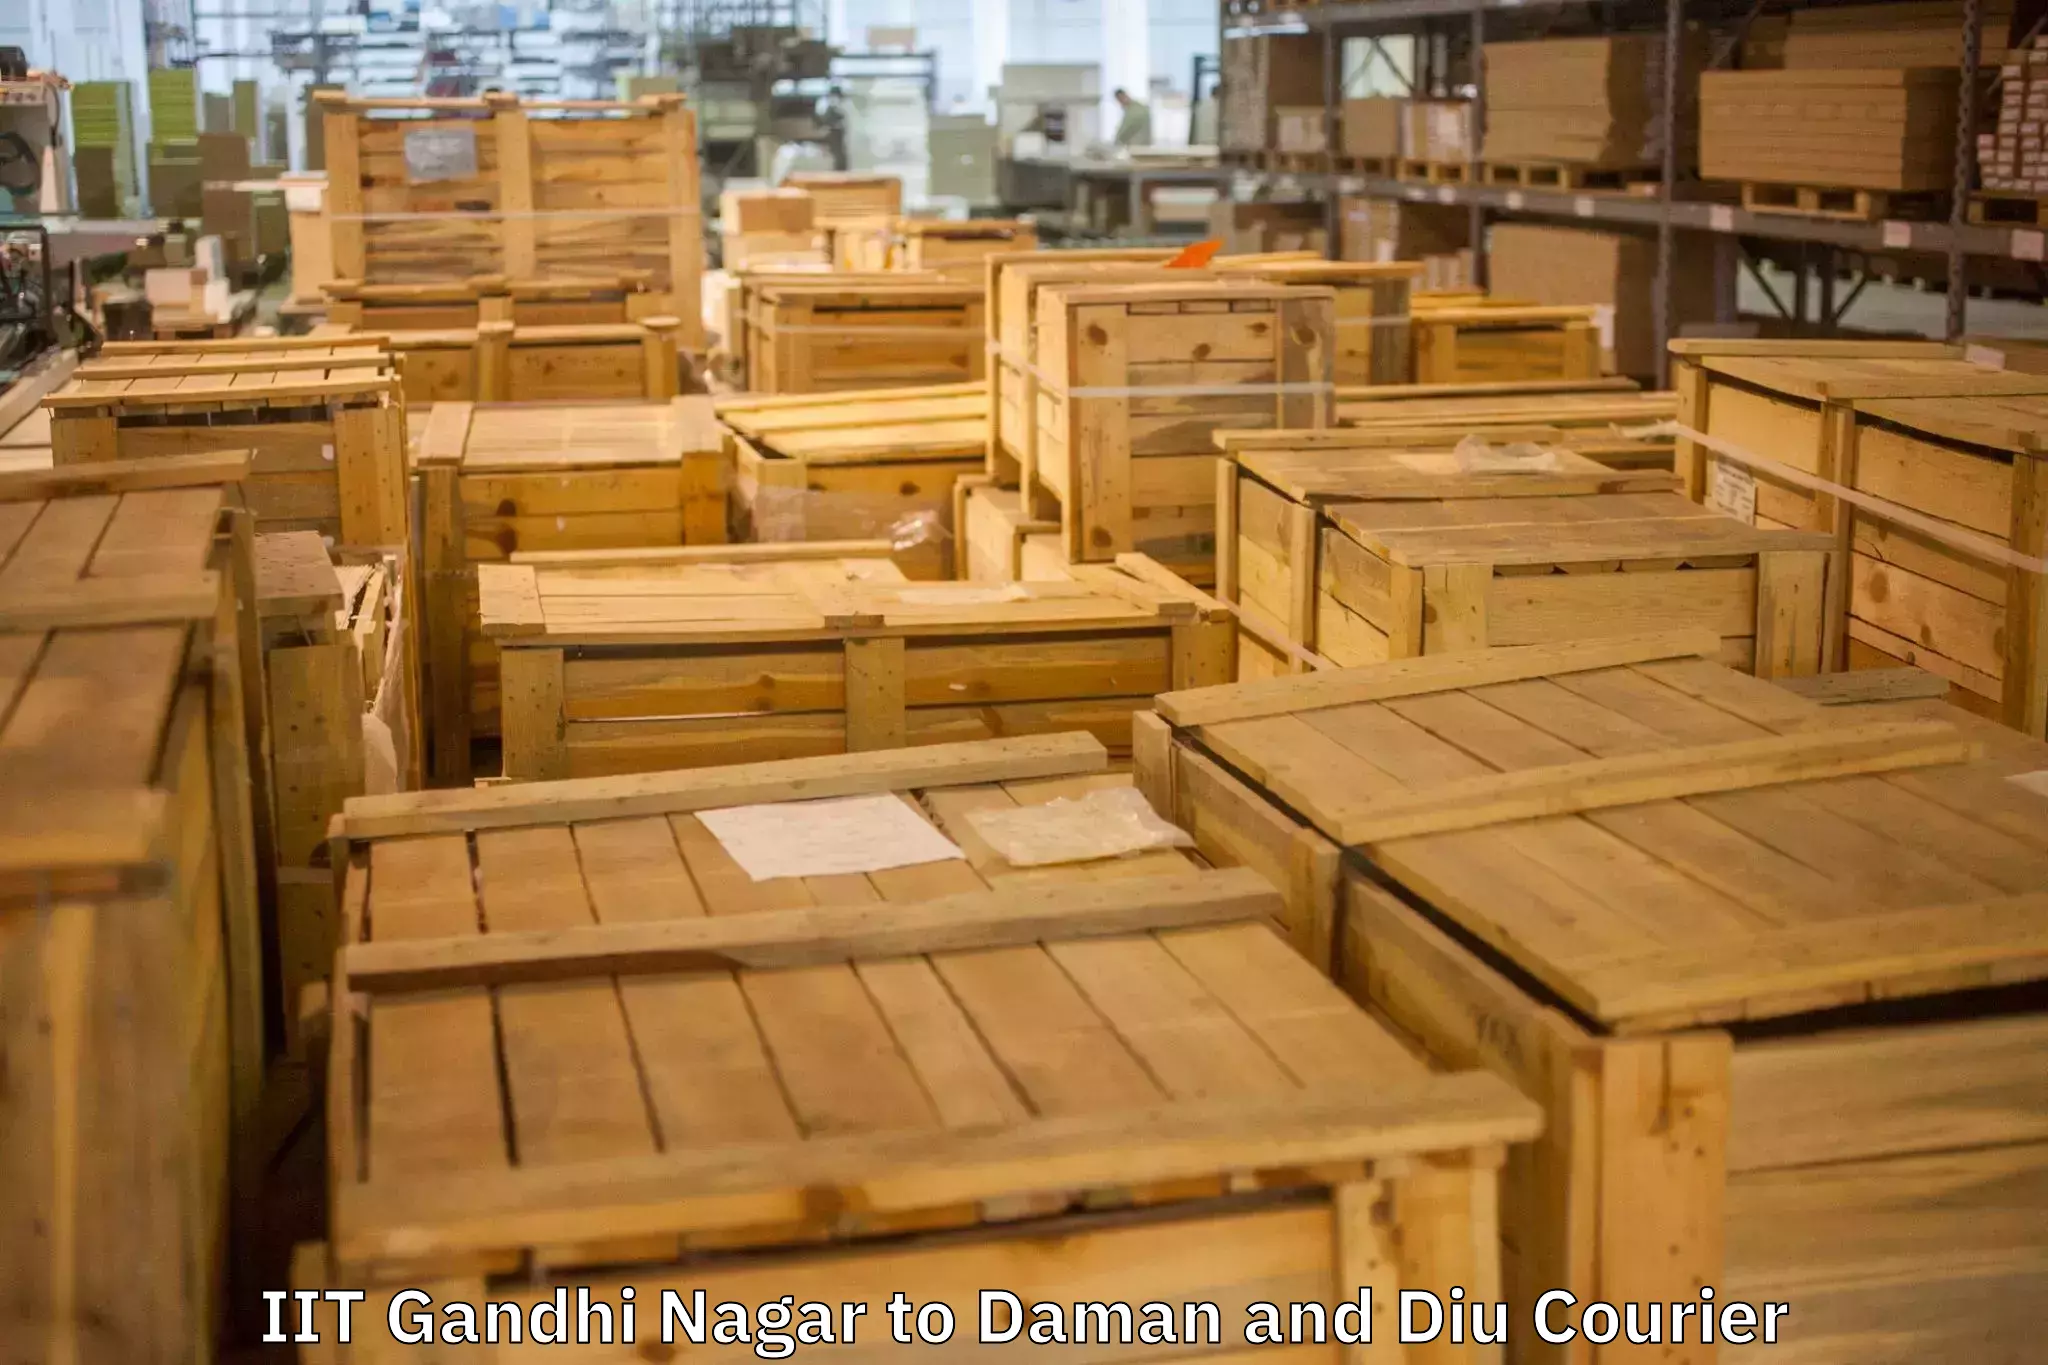 Nationwide furniture movers IIT Gandhi Nagar to Daman and Diu